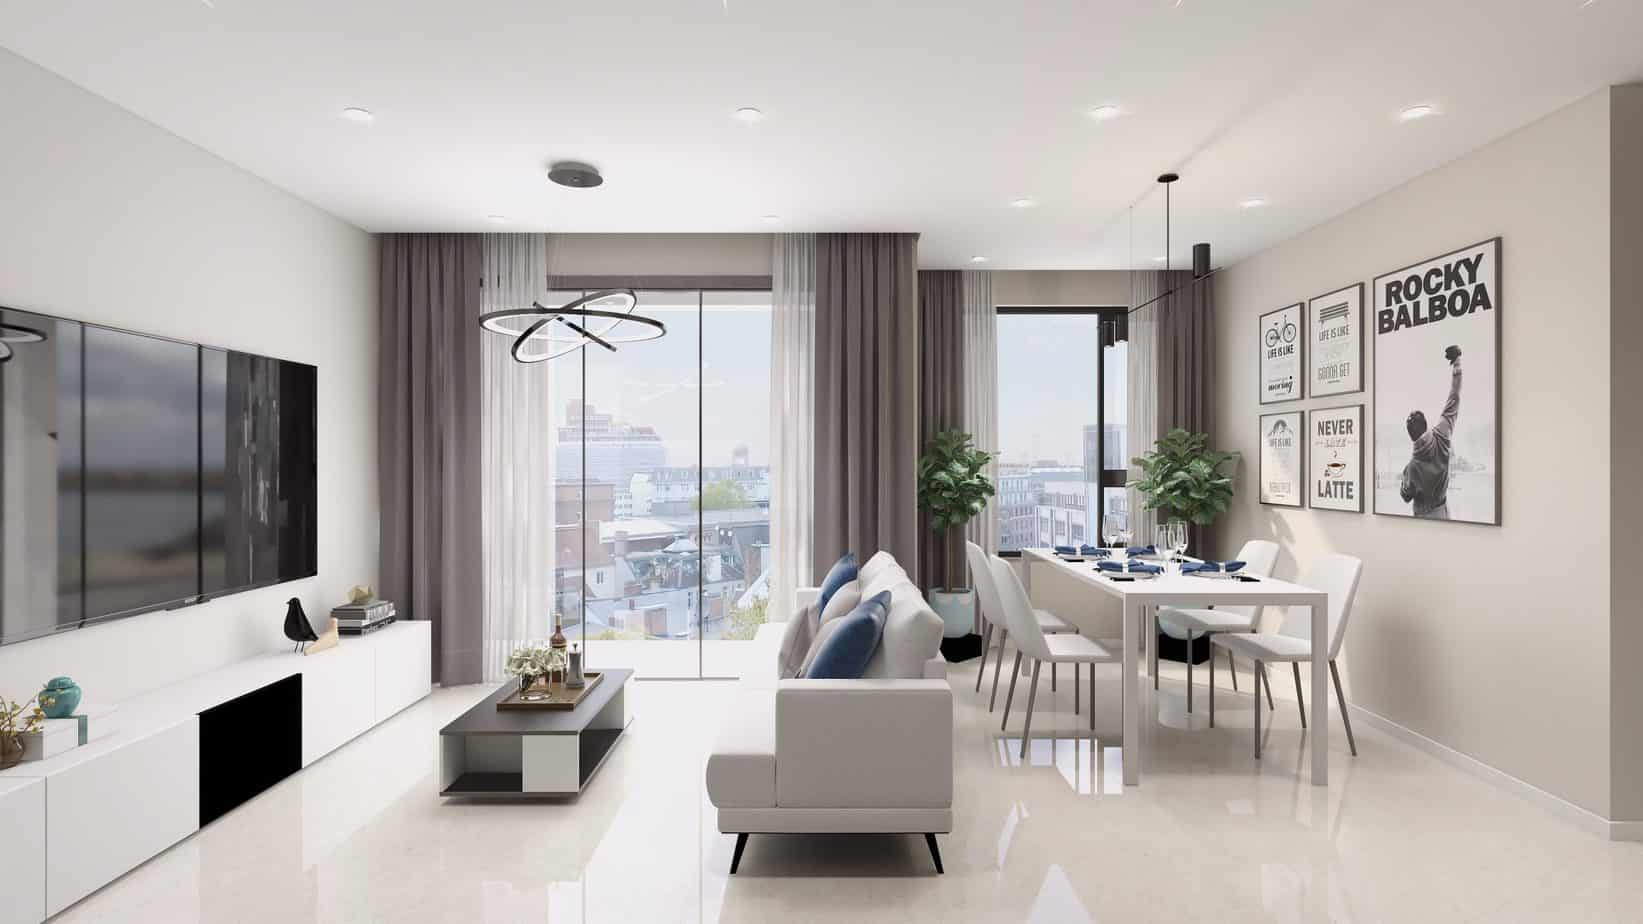 Nếu bạn muốn tìm kiếm một mẫu căn hộ đẹp, tiên nghi và sang trọng, thì hãy xem ngay mẫu căn hộ tại Vinhomes Smart City, nơi mang đến những trải nghiệm sống khó quên.